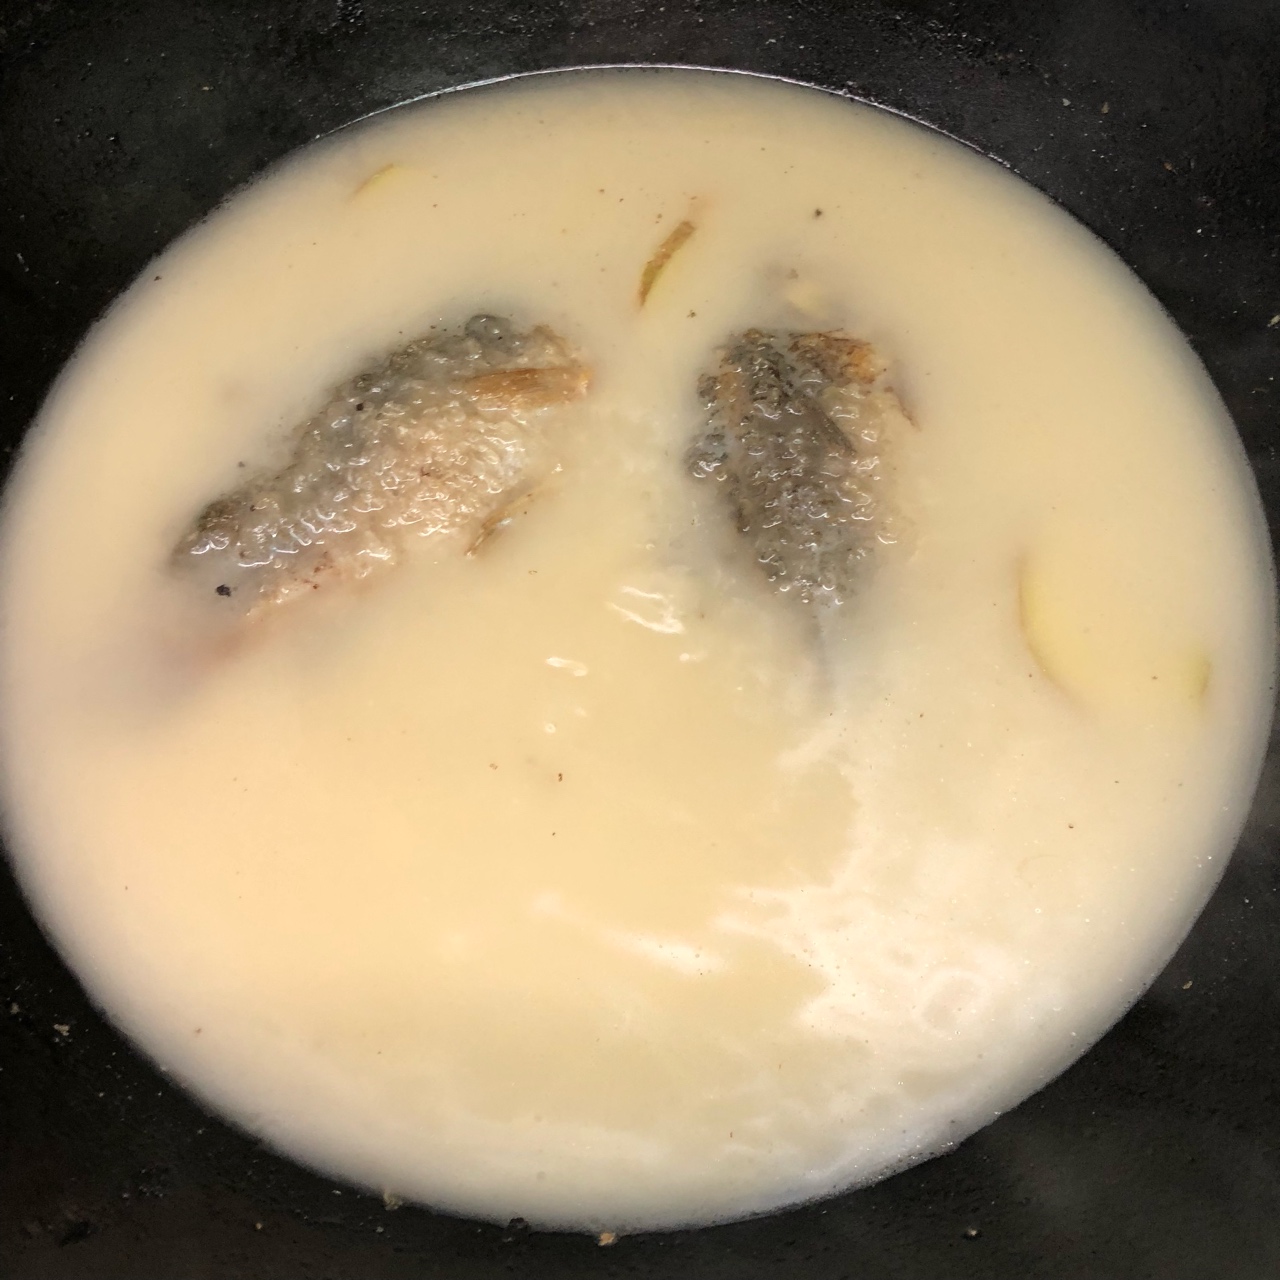 清炖鲫鱼汤 三个关键步骤让你轻松炖出汤浓味鲜色白似奶的鲫鱼汤